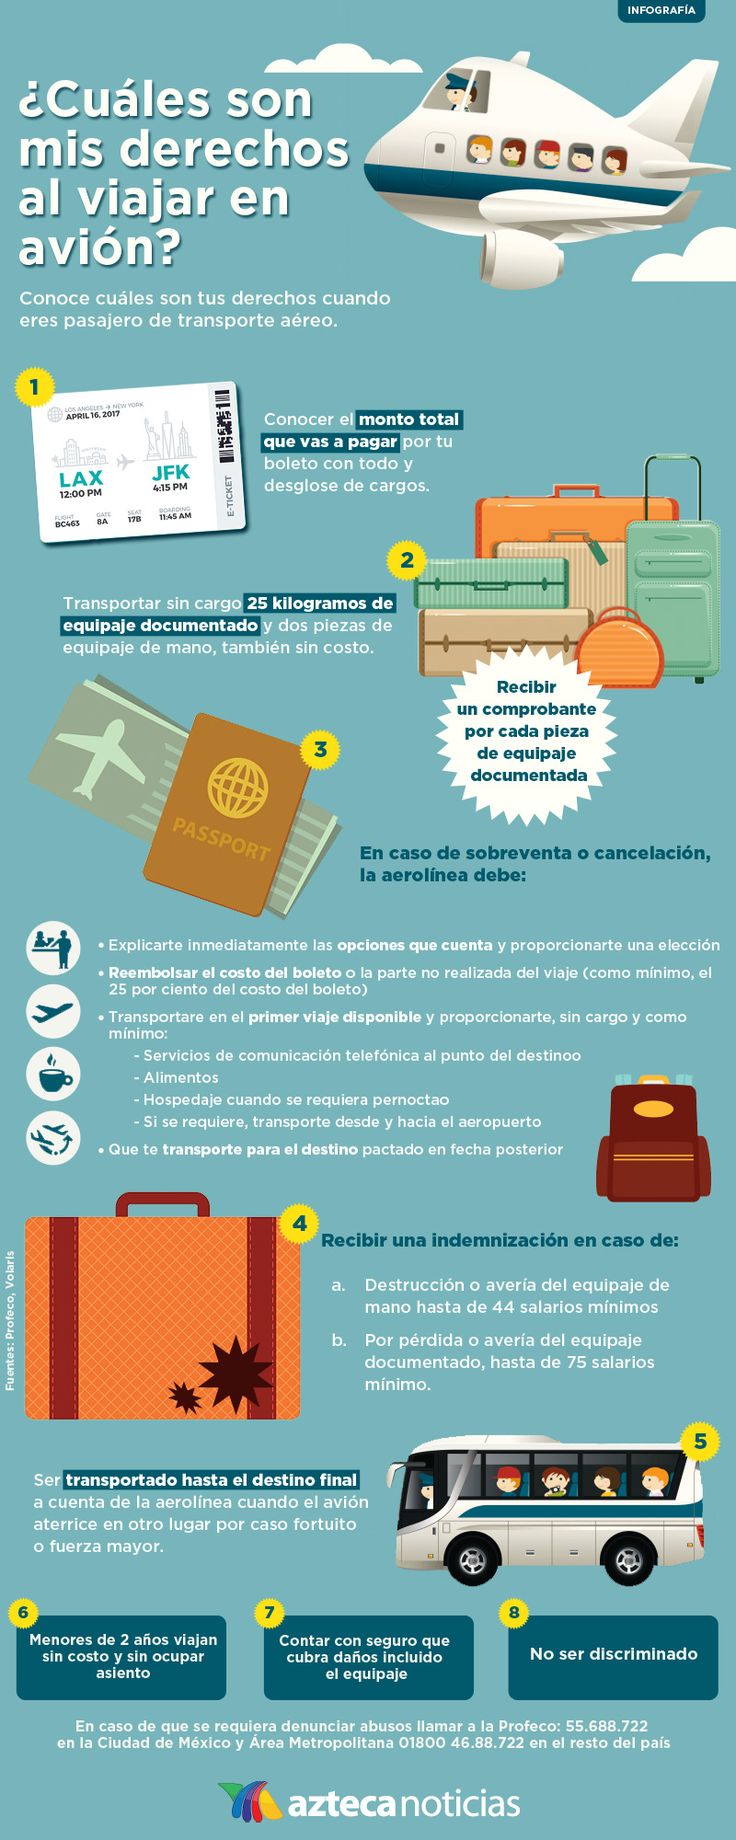 Ejemplo de Infografía para Agencia de Viajes